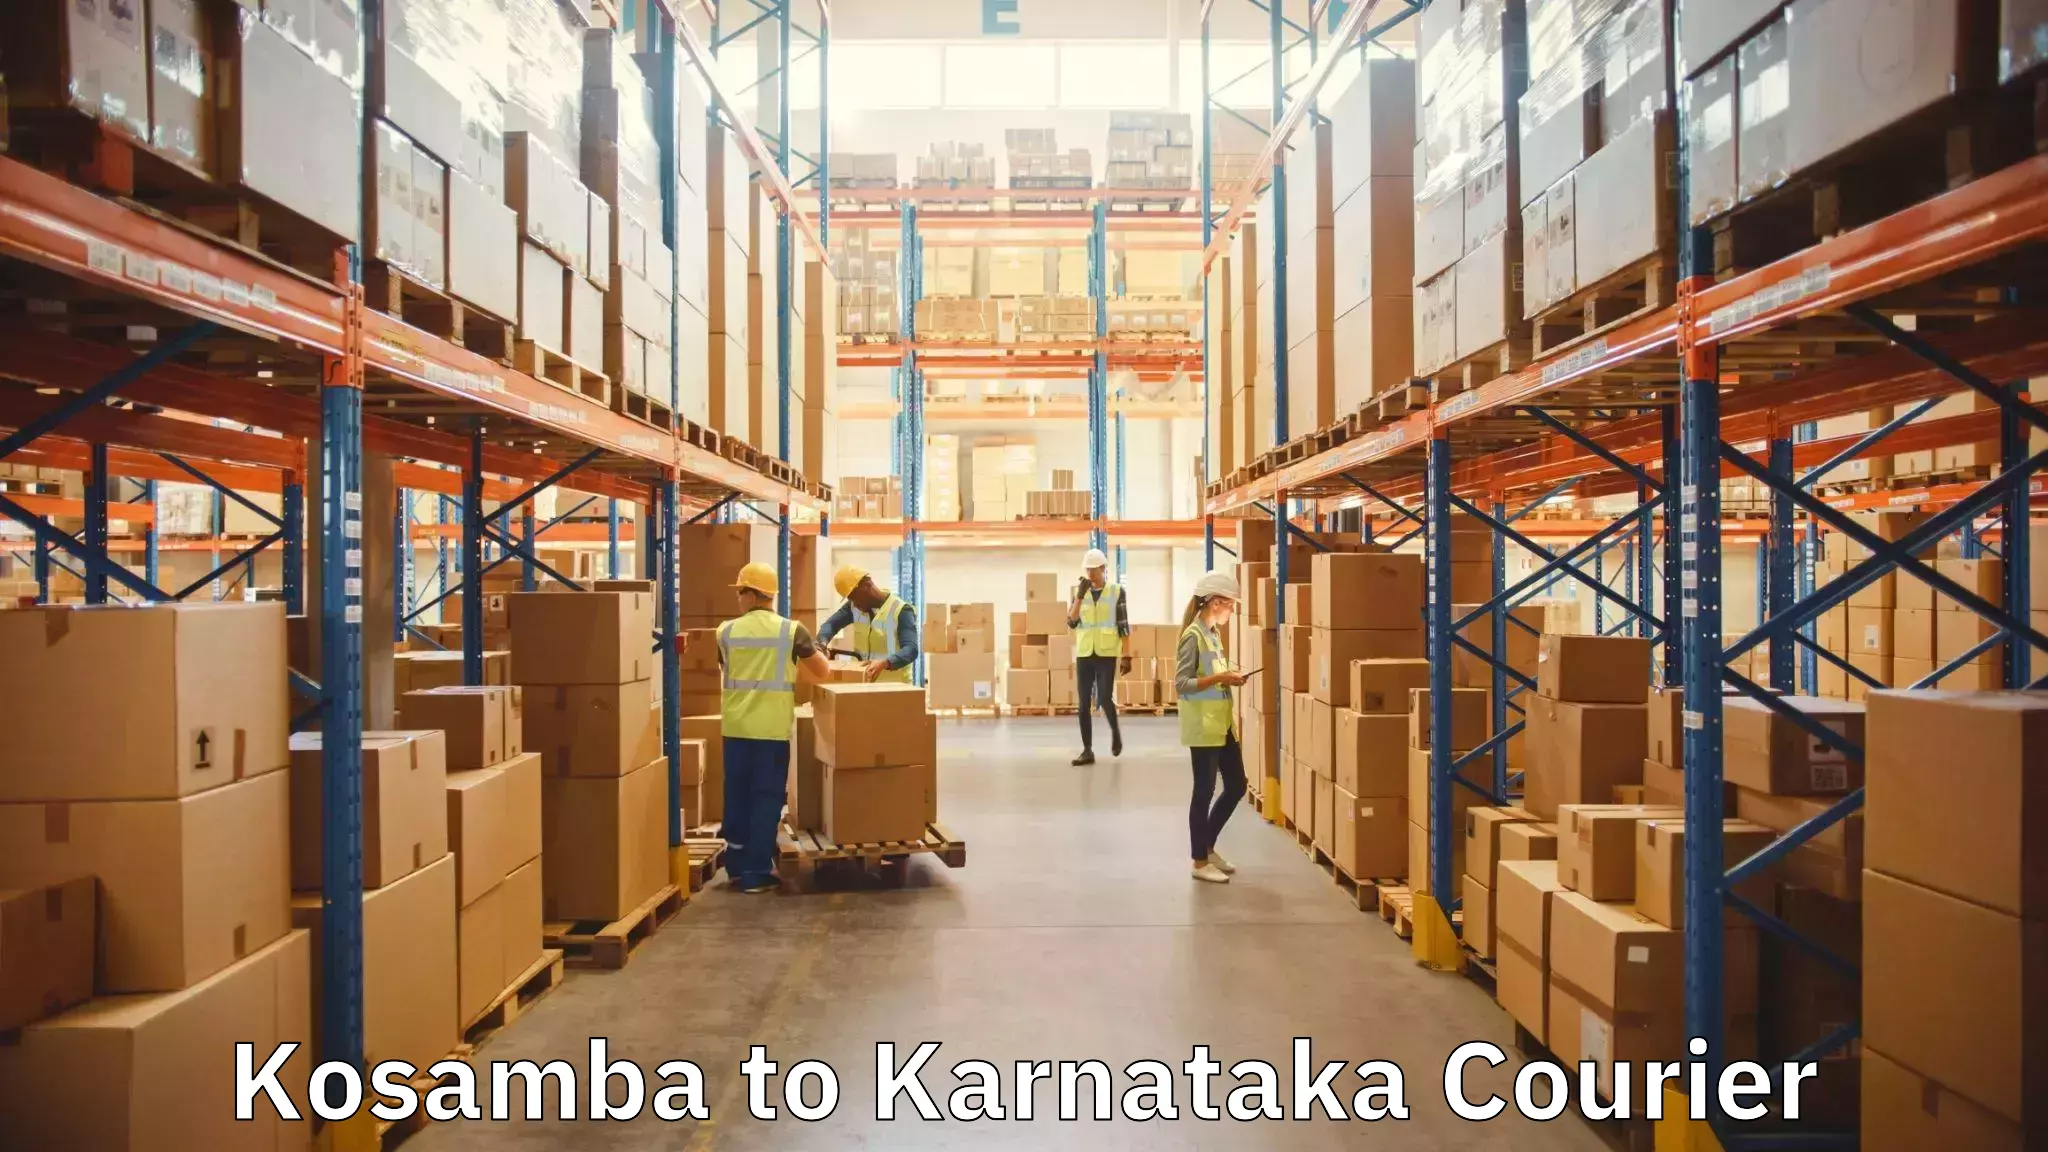 Specialized moving company Kosamba to Karnataka